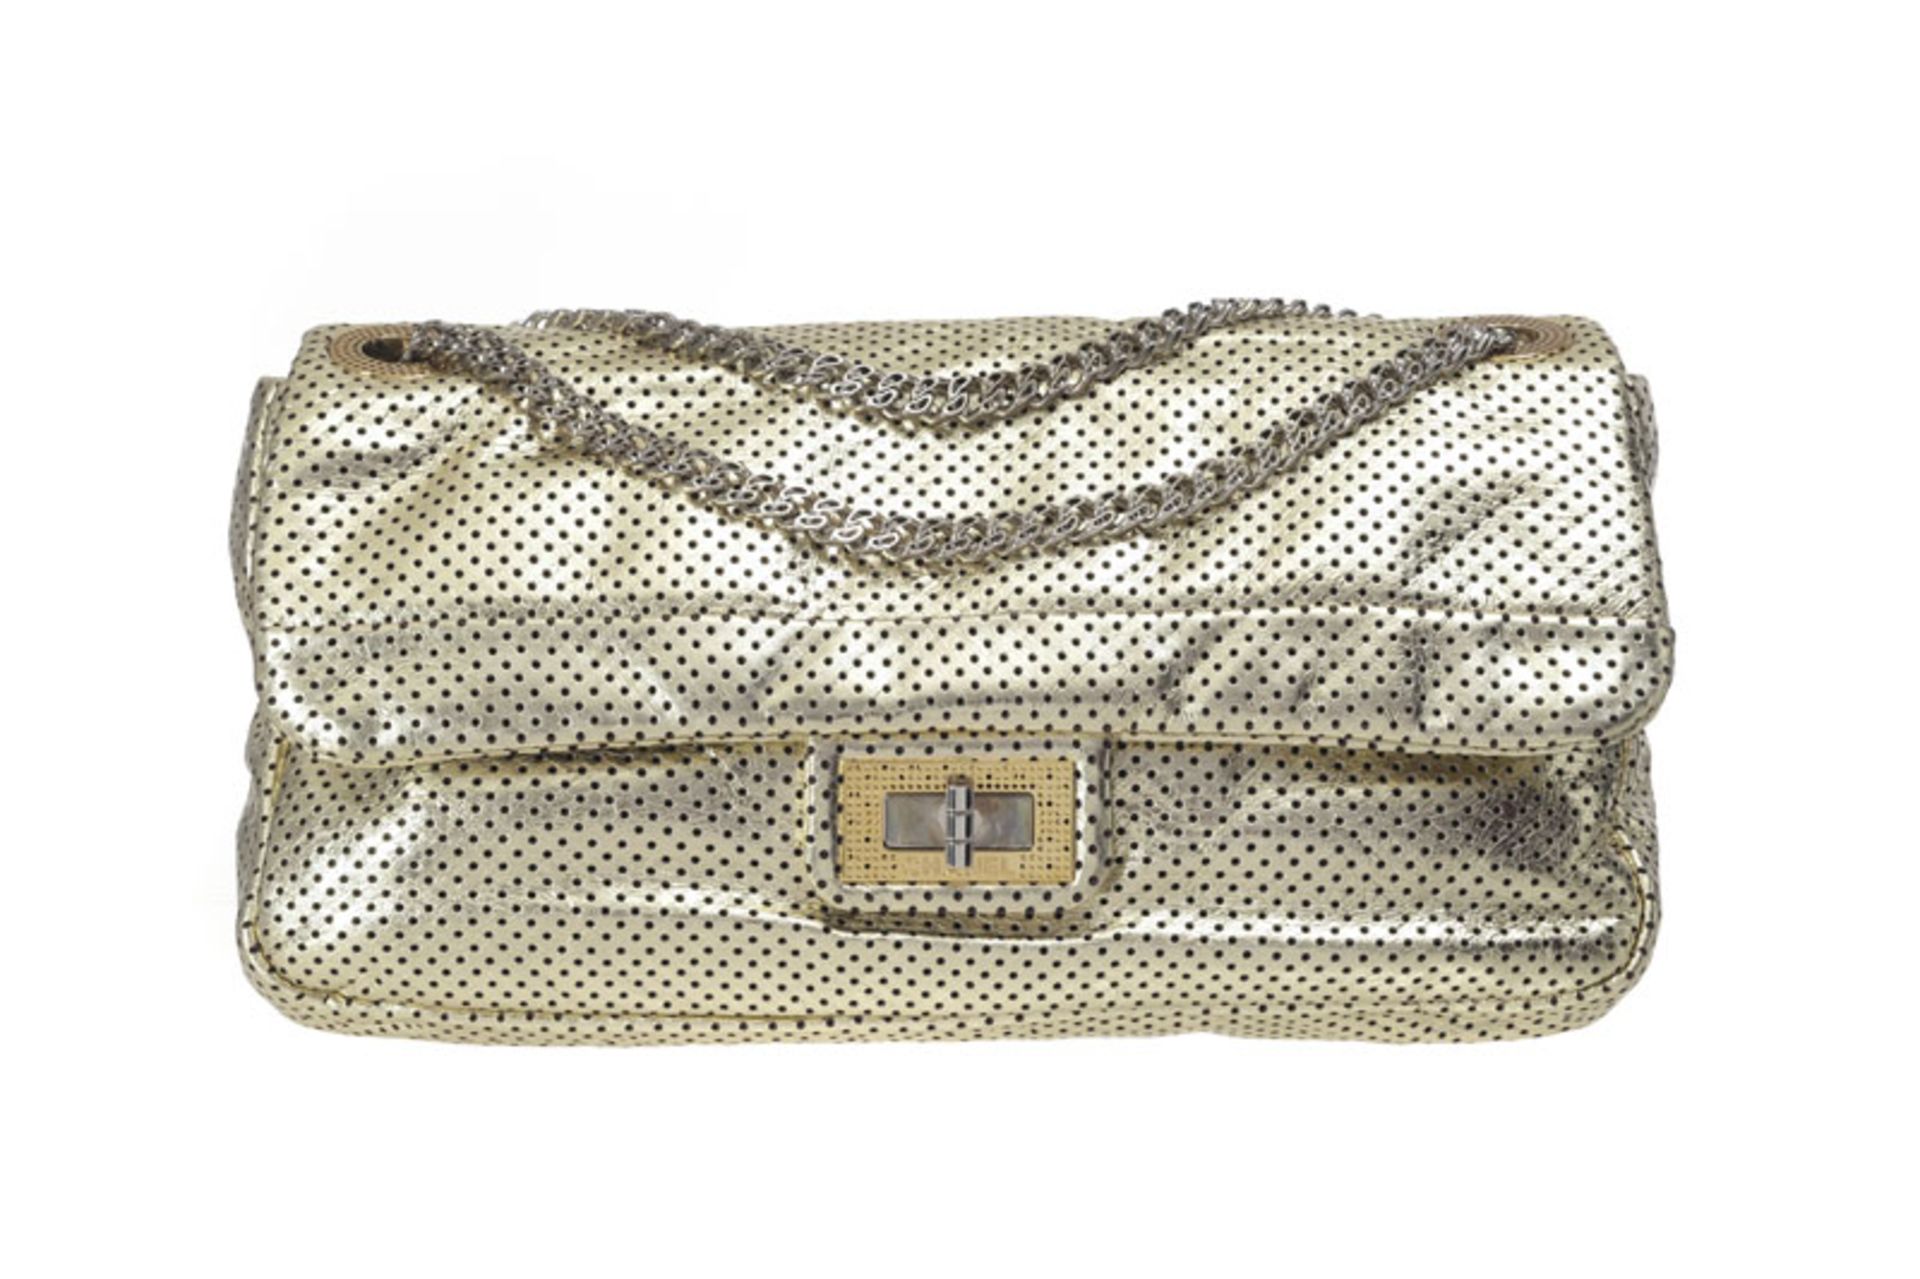 Chanel, sac 2.55 en cuir métallisé or et perforé, année 2009, rabat simple avec bandoulière à chaîne